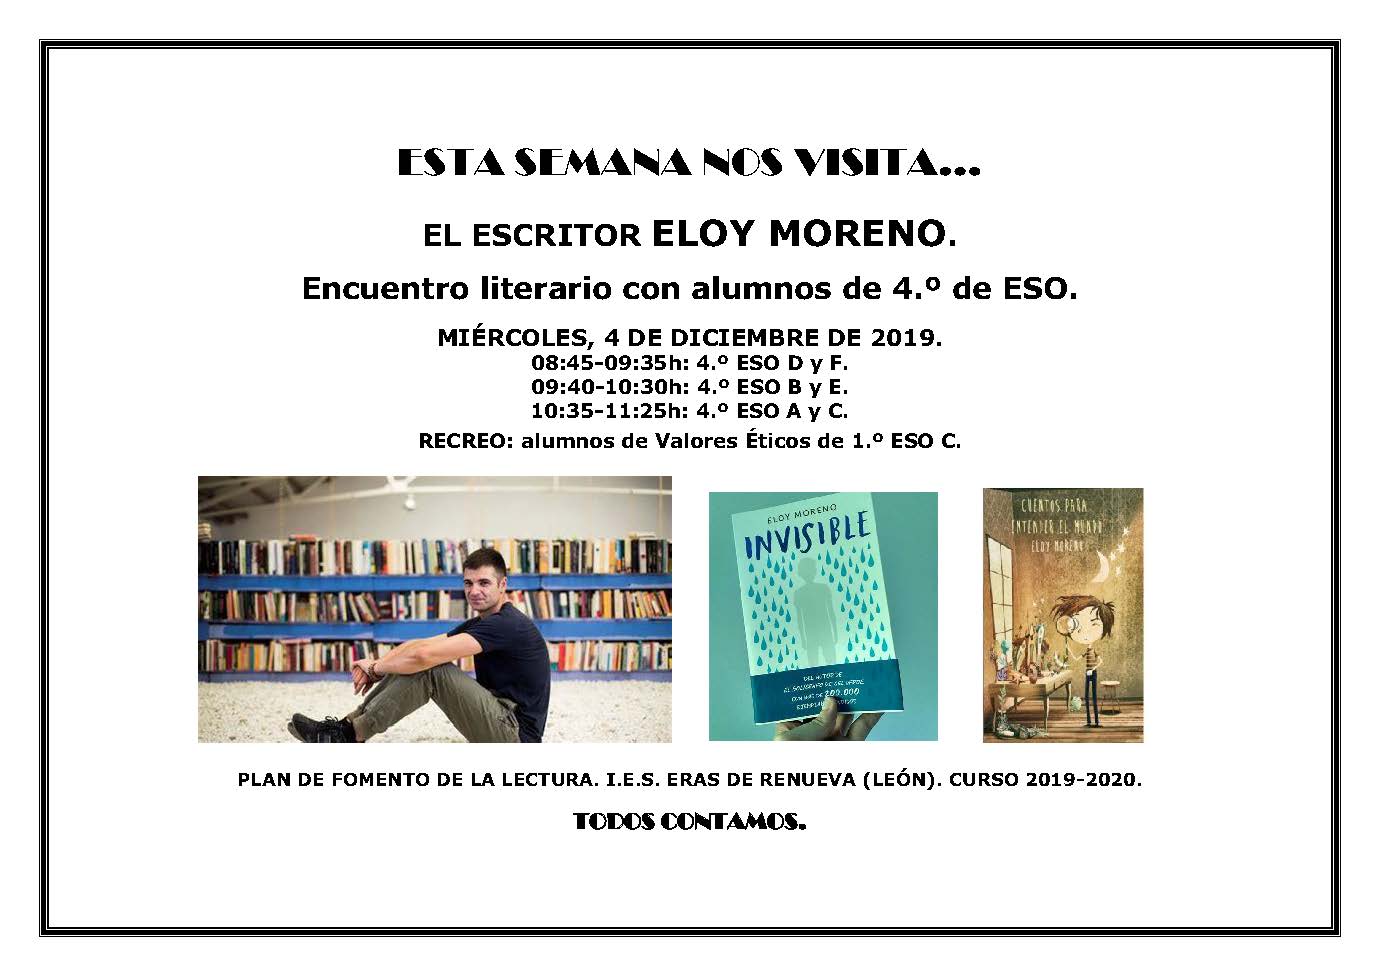 2019-20 ENCUENTROS LITERARIOS ELOY MORENO